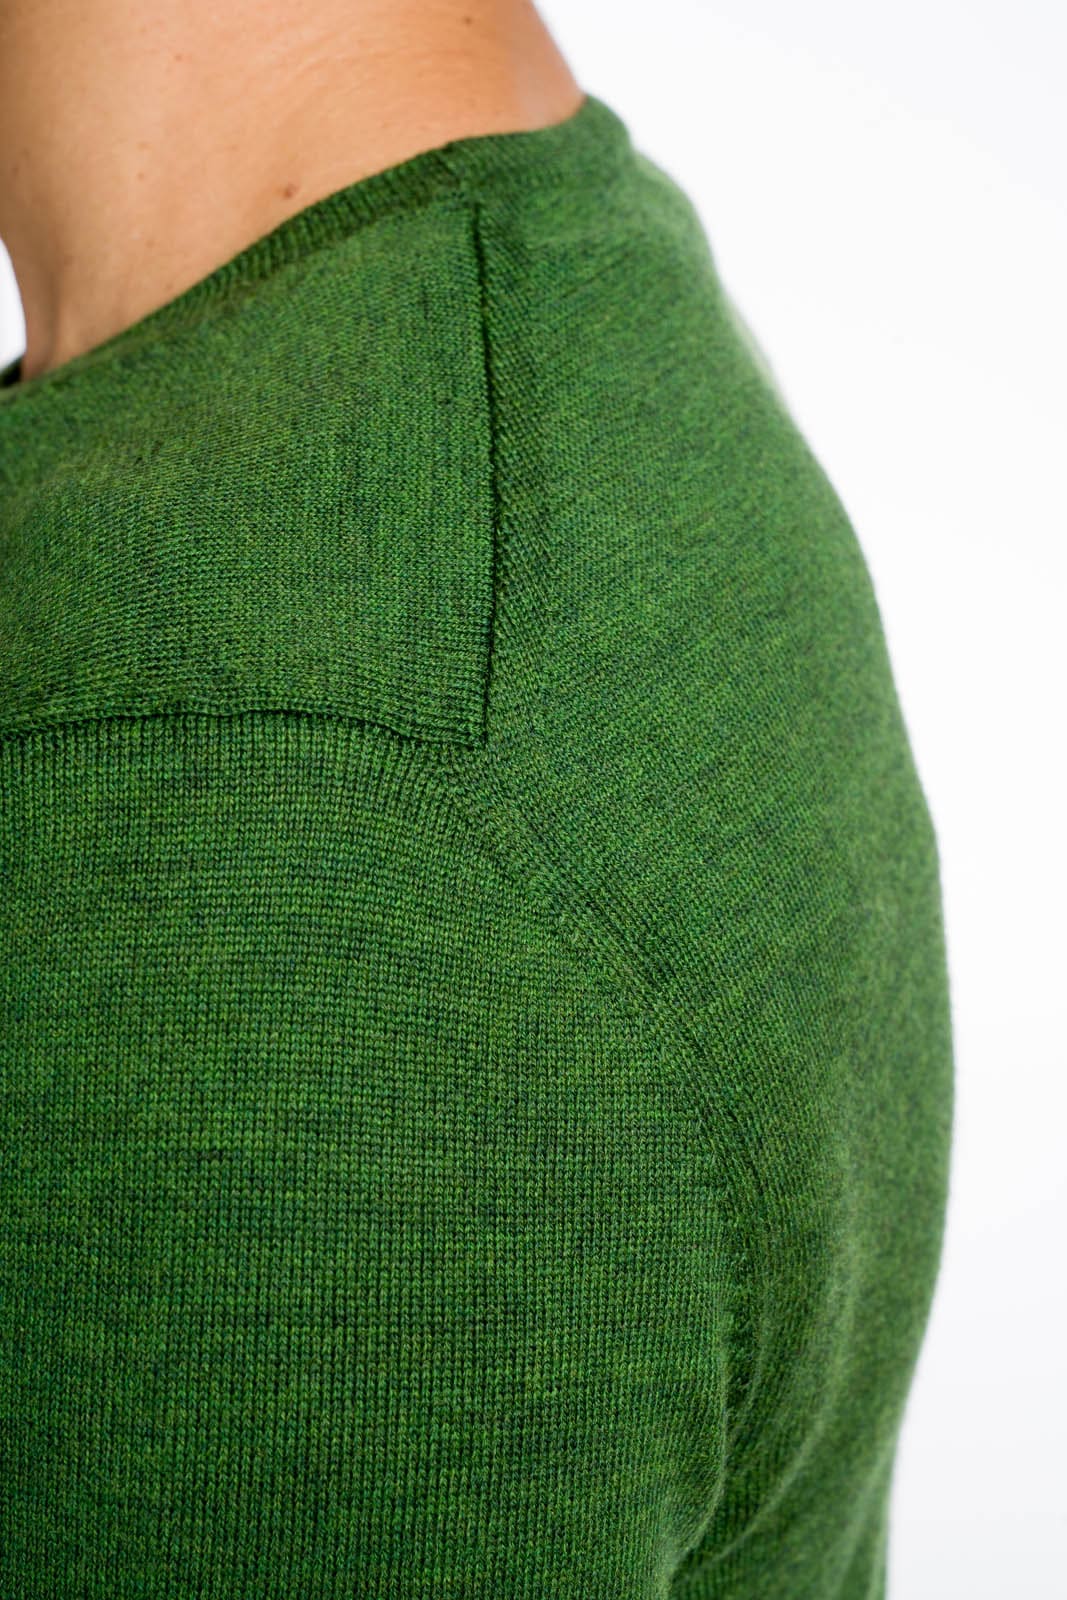 maglia girocollo uomo verde in lana merino